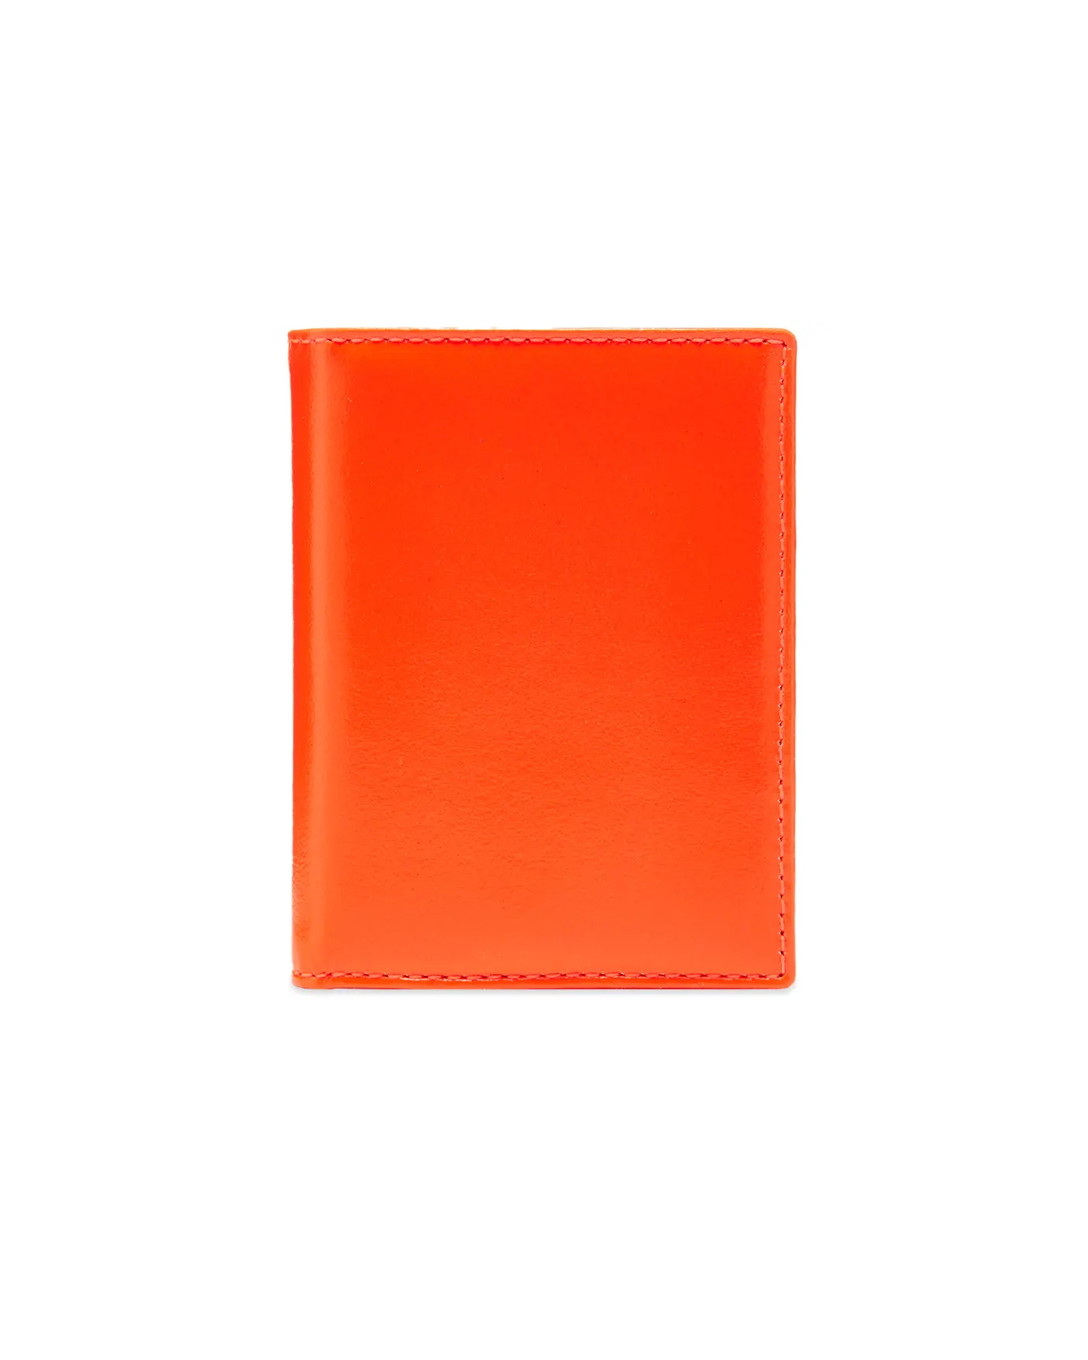 Super Fluo Leather Line Orange/ Pink